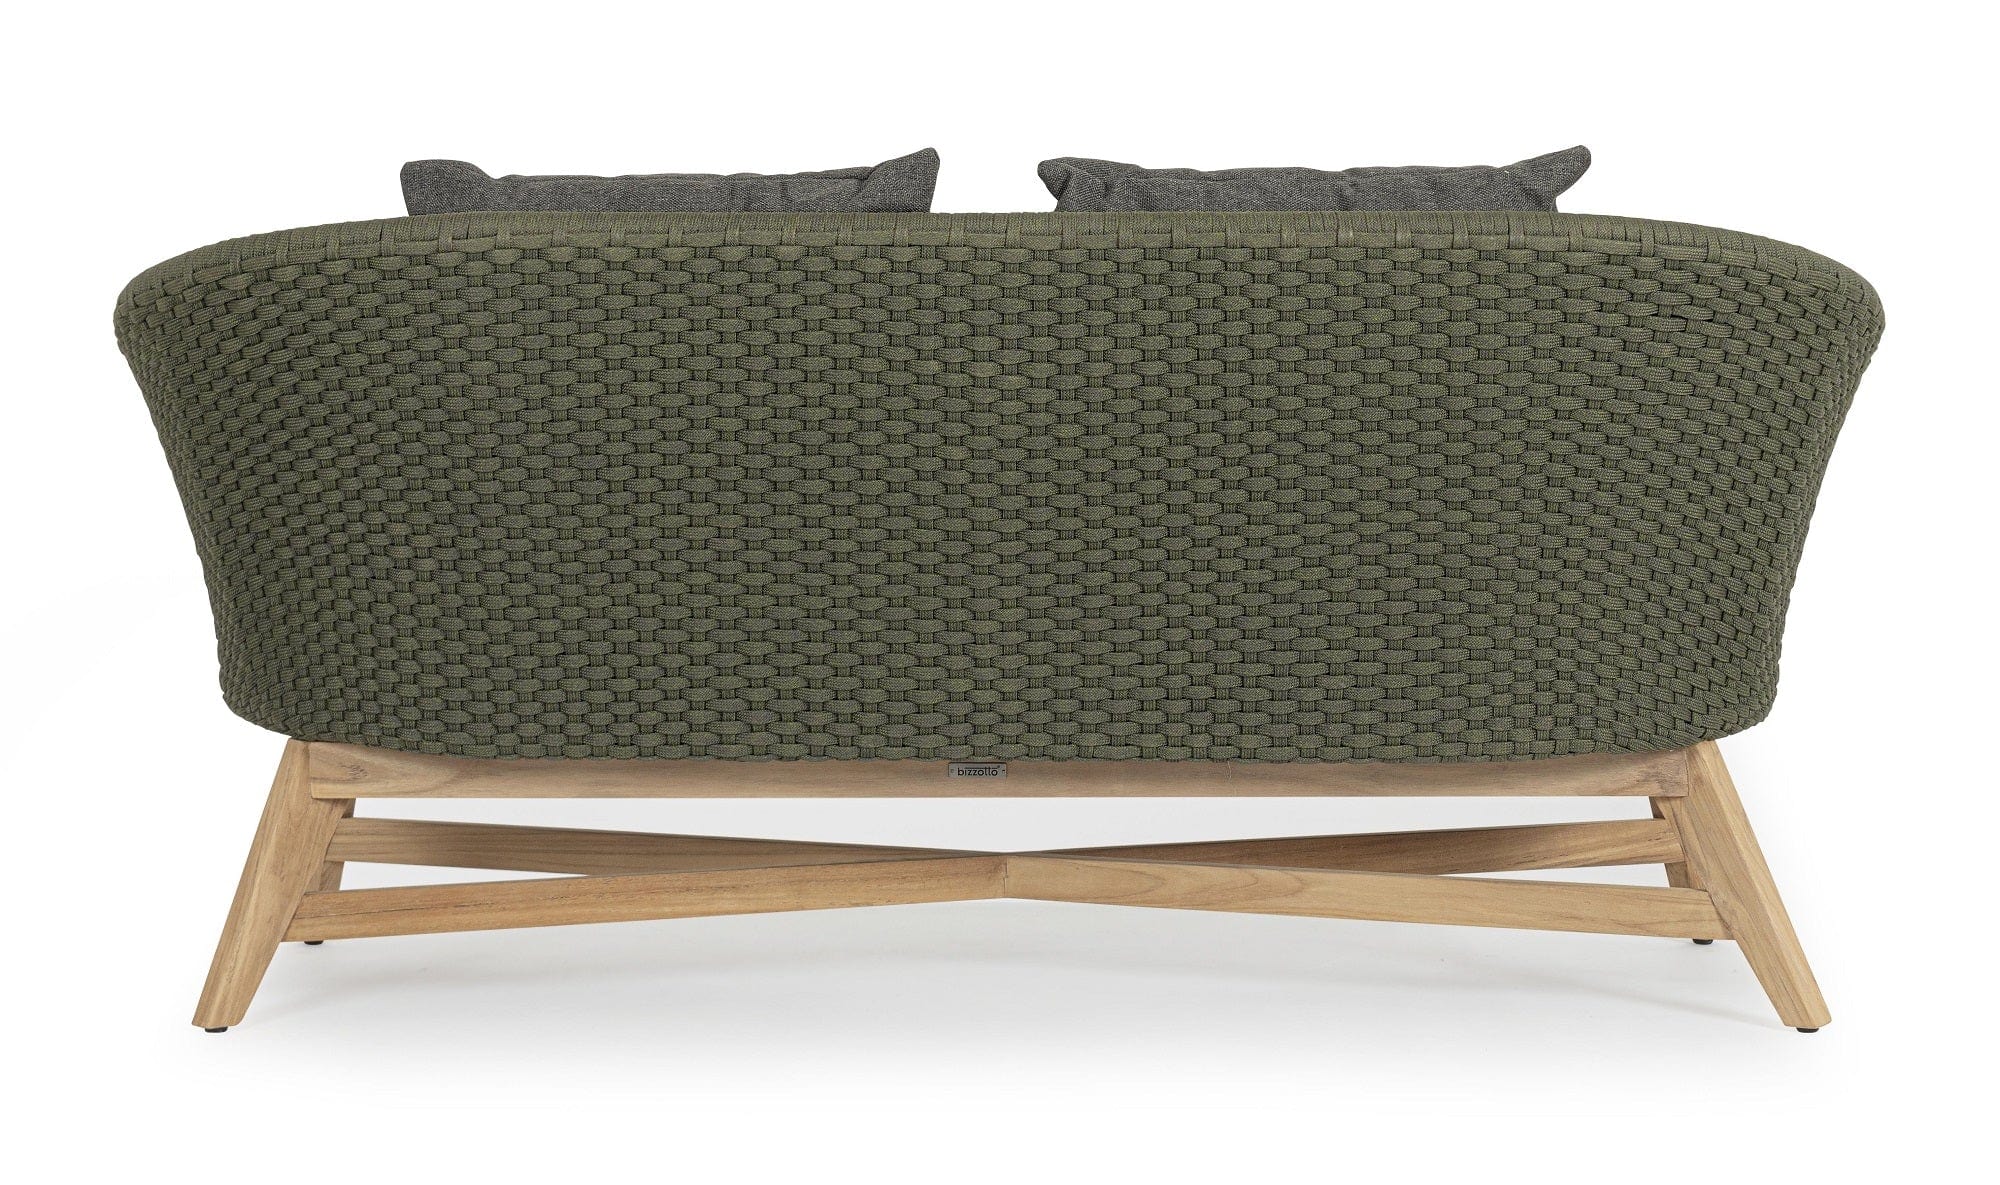 Bizzotto Canapea fixa pentru gradina / terasa, din aluminiu si lemn de tec, 2 locuri, Coachella Verde Olive / Natural, l168xA78xH77 cm